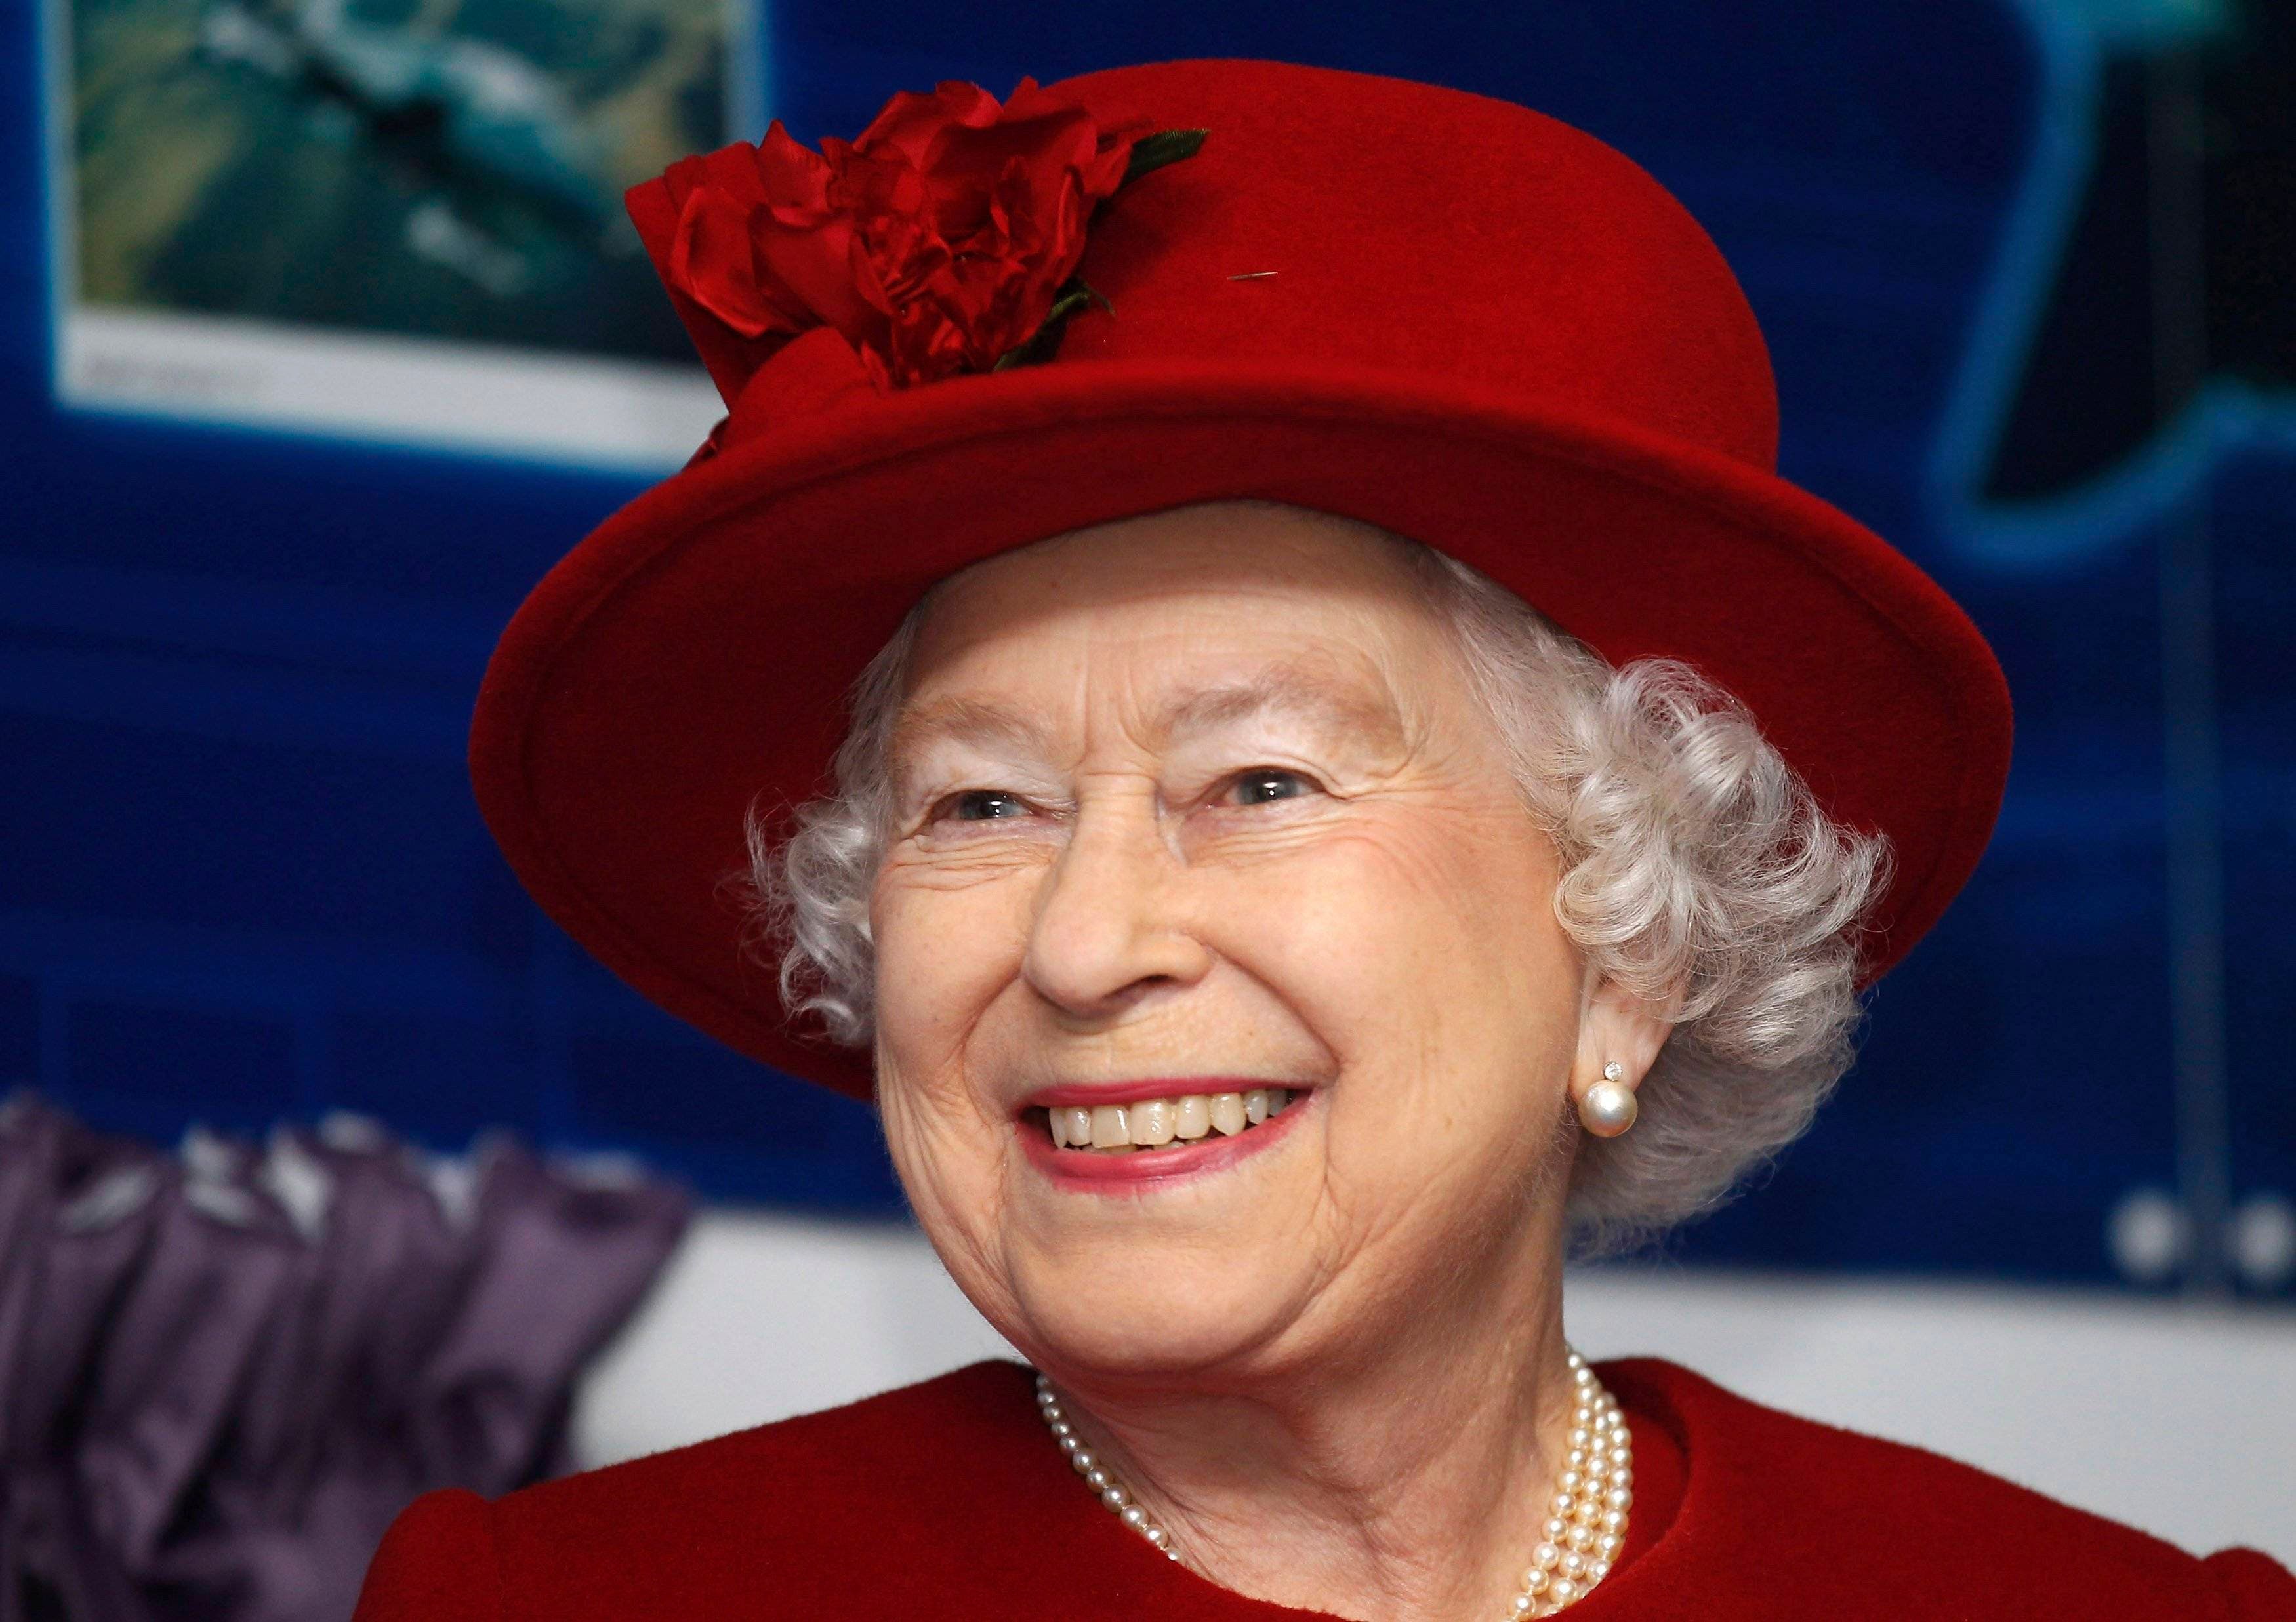 Buckingham organiza una exposición sobre el reinado más largo del Reino Unido